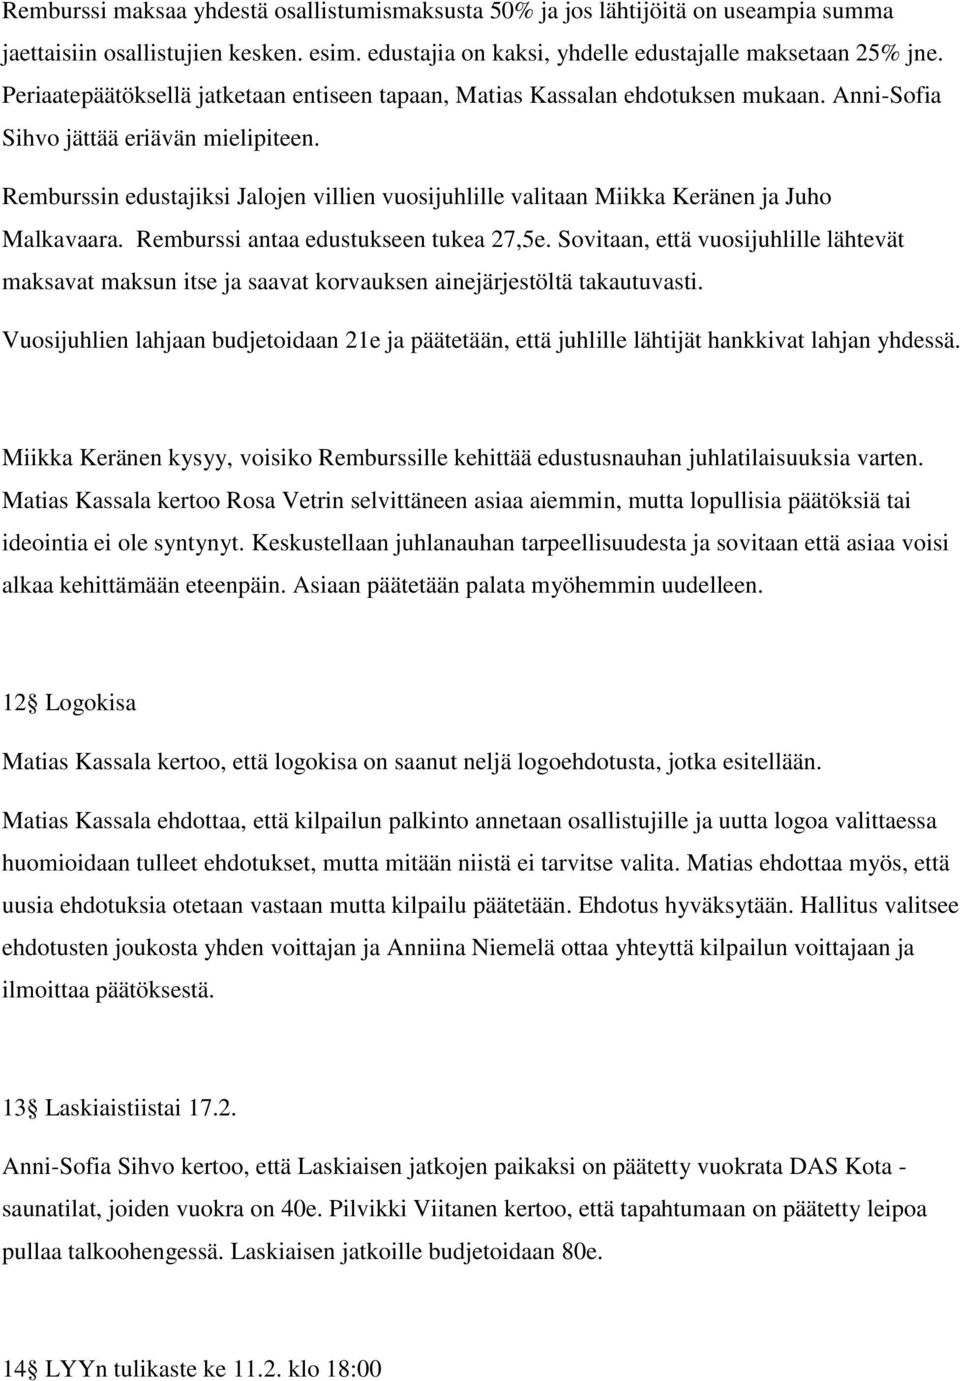 Remburssin edustajiksi Jalojen villien vuosijuhlille valitaan Miikka Keränen ja Juho Malkavaara. Remburssi antaa edustukseen tukea 27,5e.